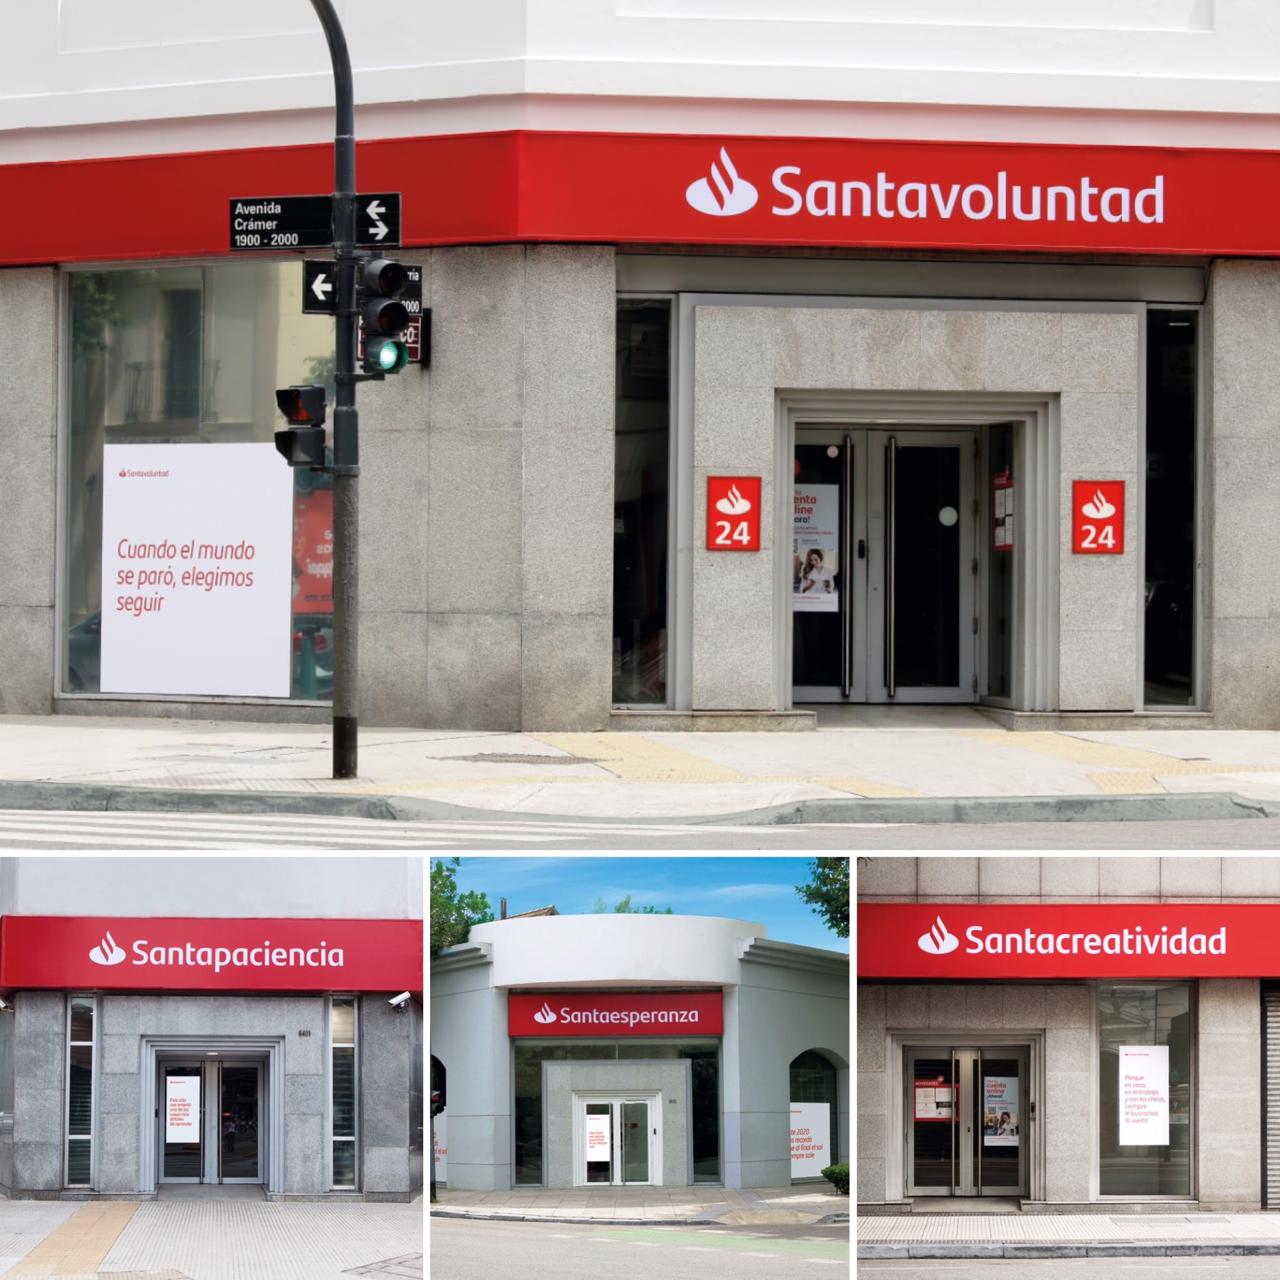 Campaña “Aprendizajes” de  Santander. En homenaje a clientes y colaboradores